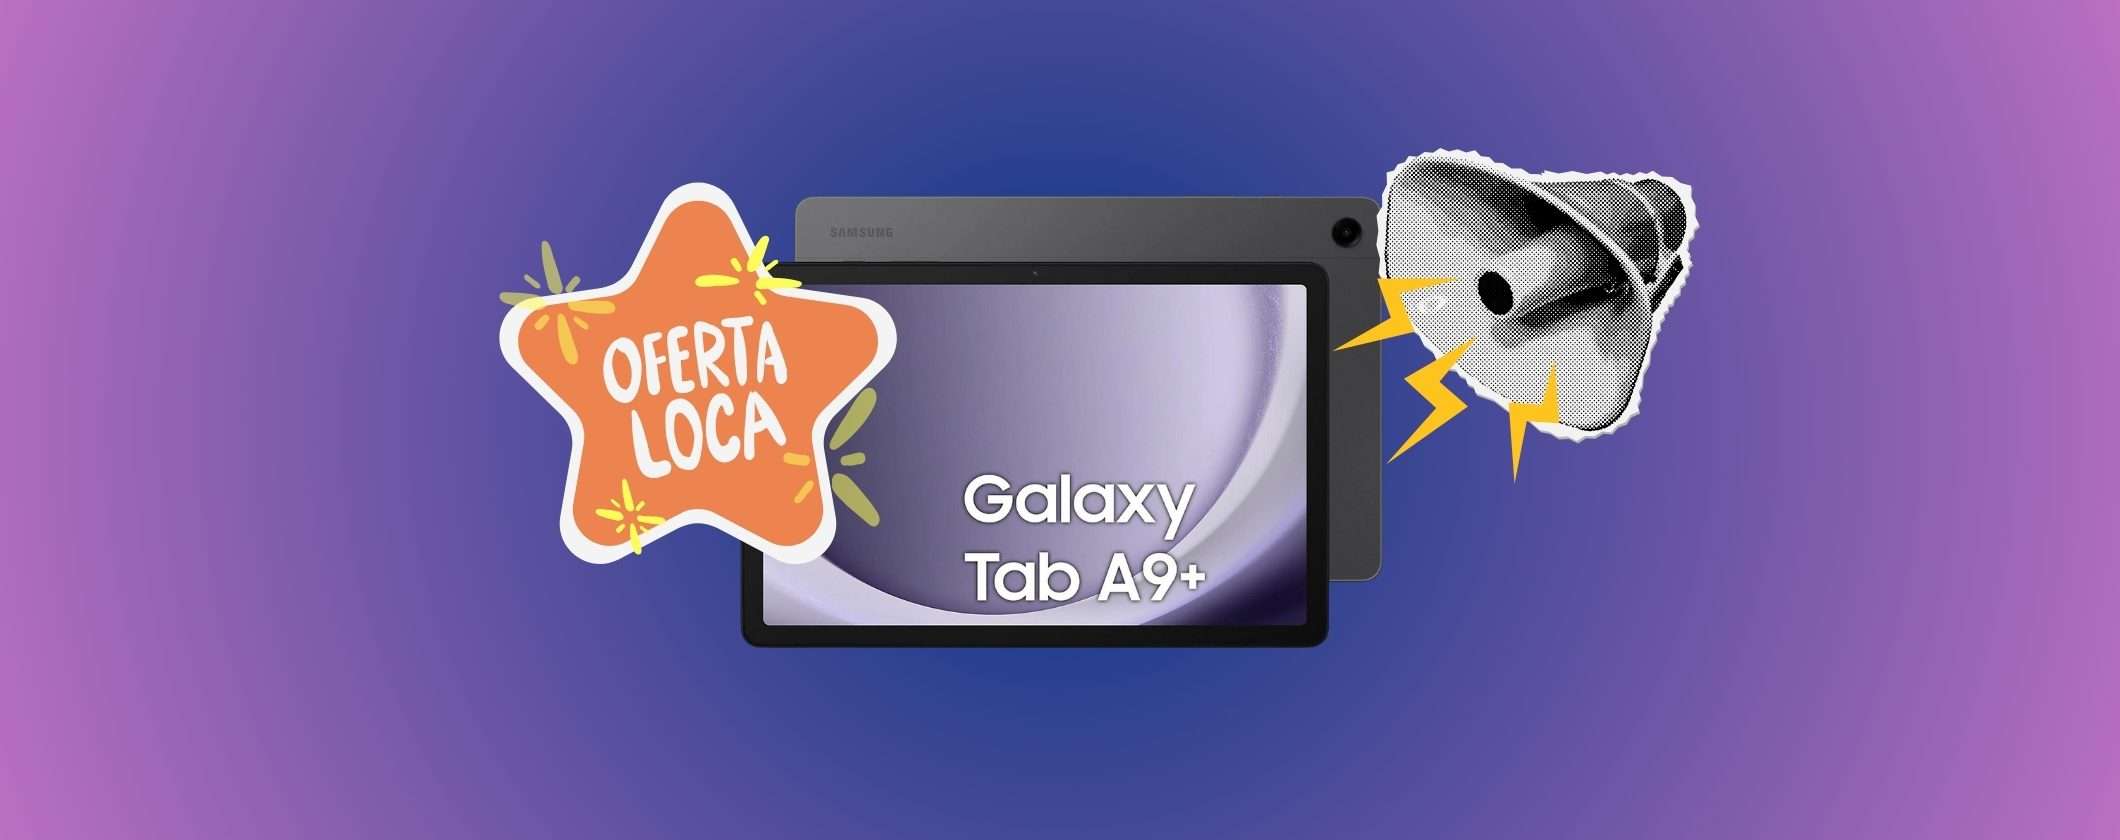 Samsung Galaxy Tab A9+: SCONTO FOLLE su MediaWorld, ultime ore